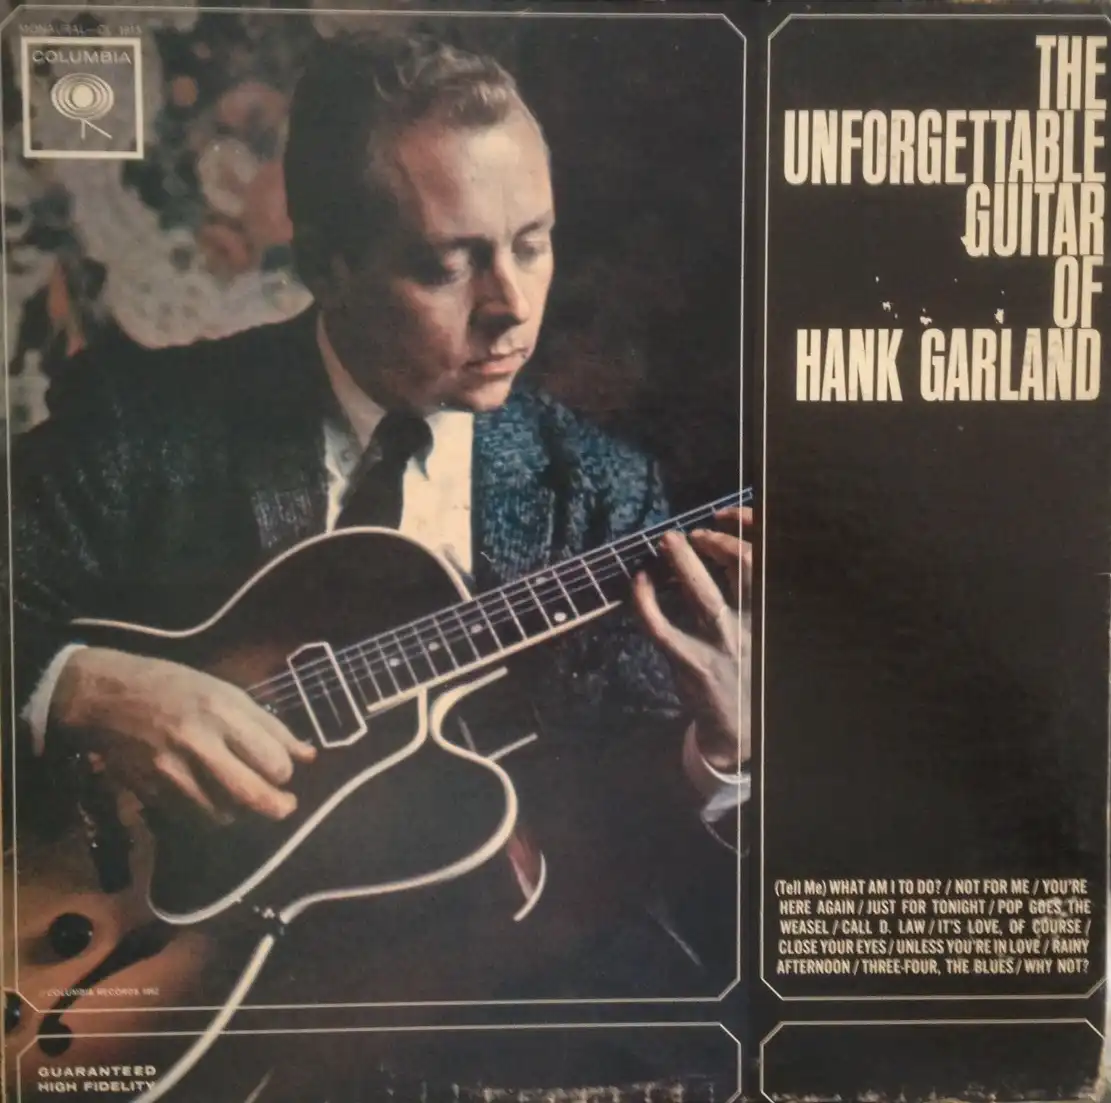 HANK GARLAND /UNFORGETTABLE GUITAR OF HANK GARLAND